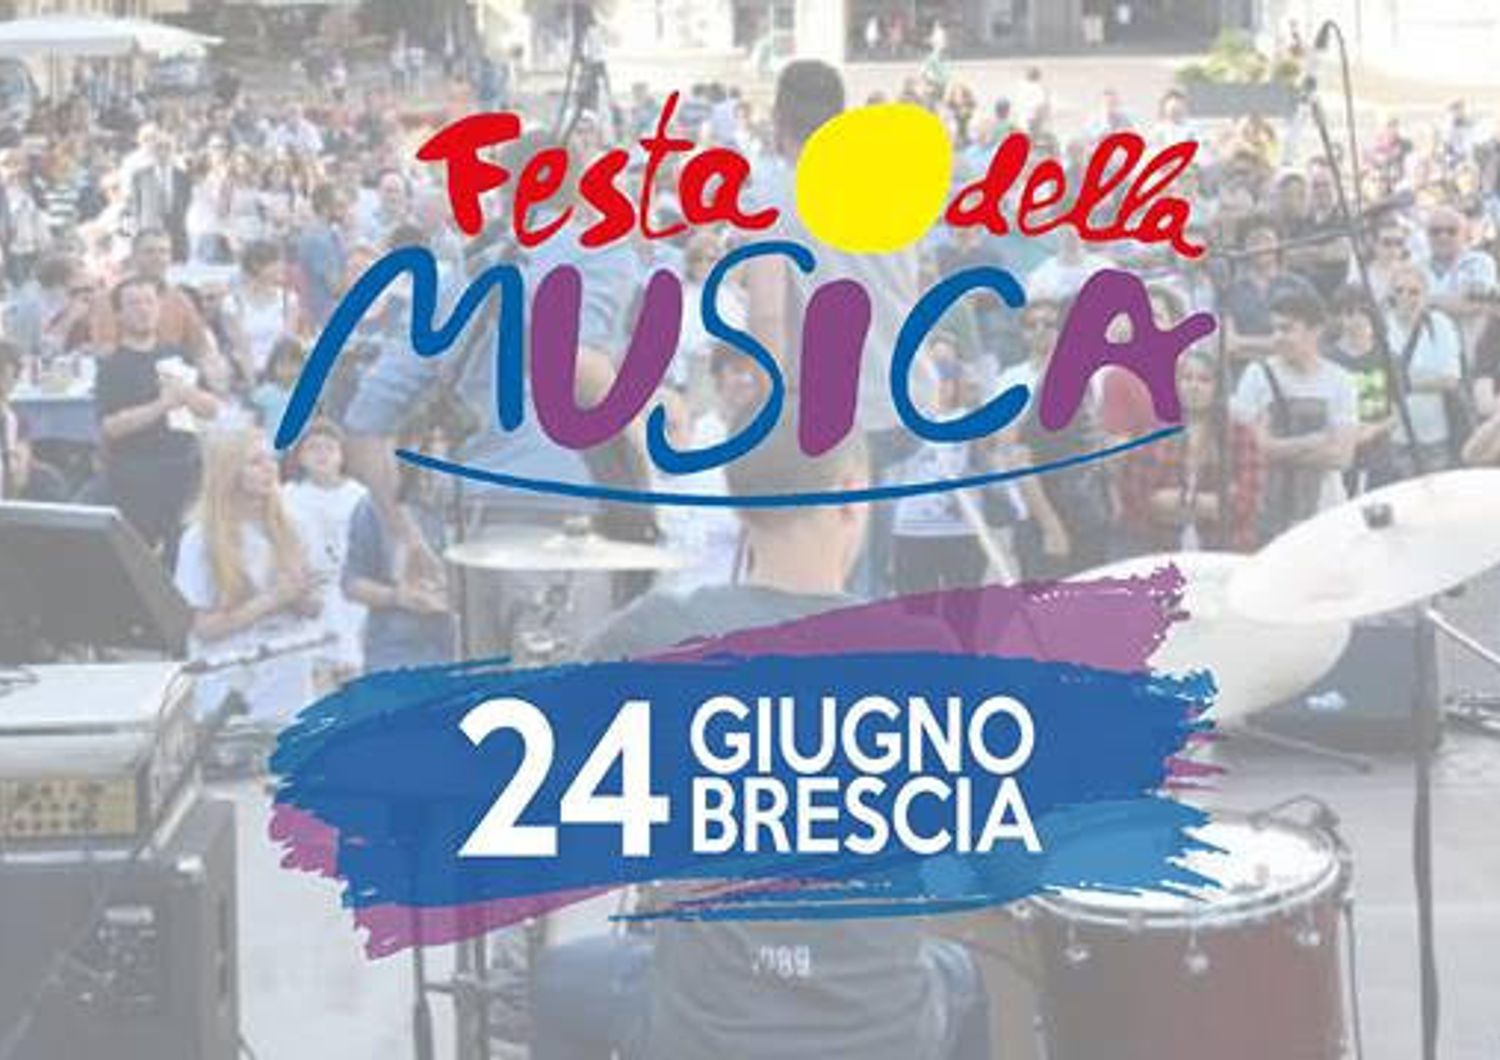 Festa Musica Brescia